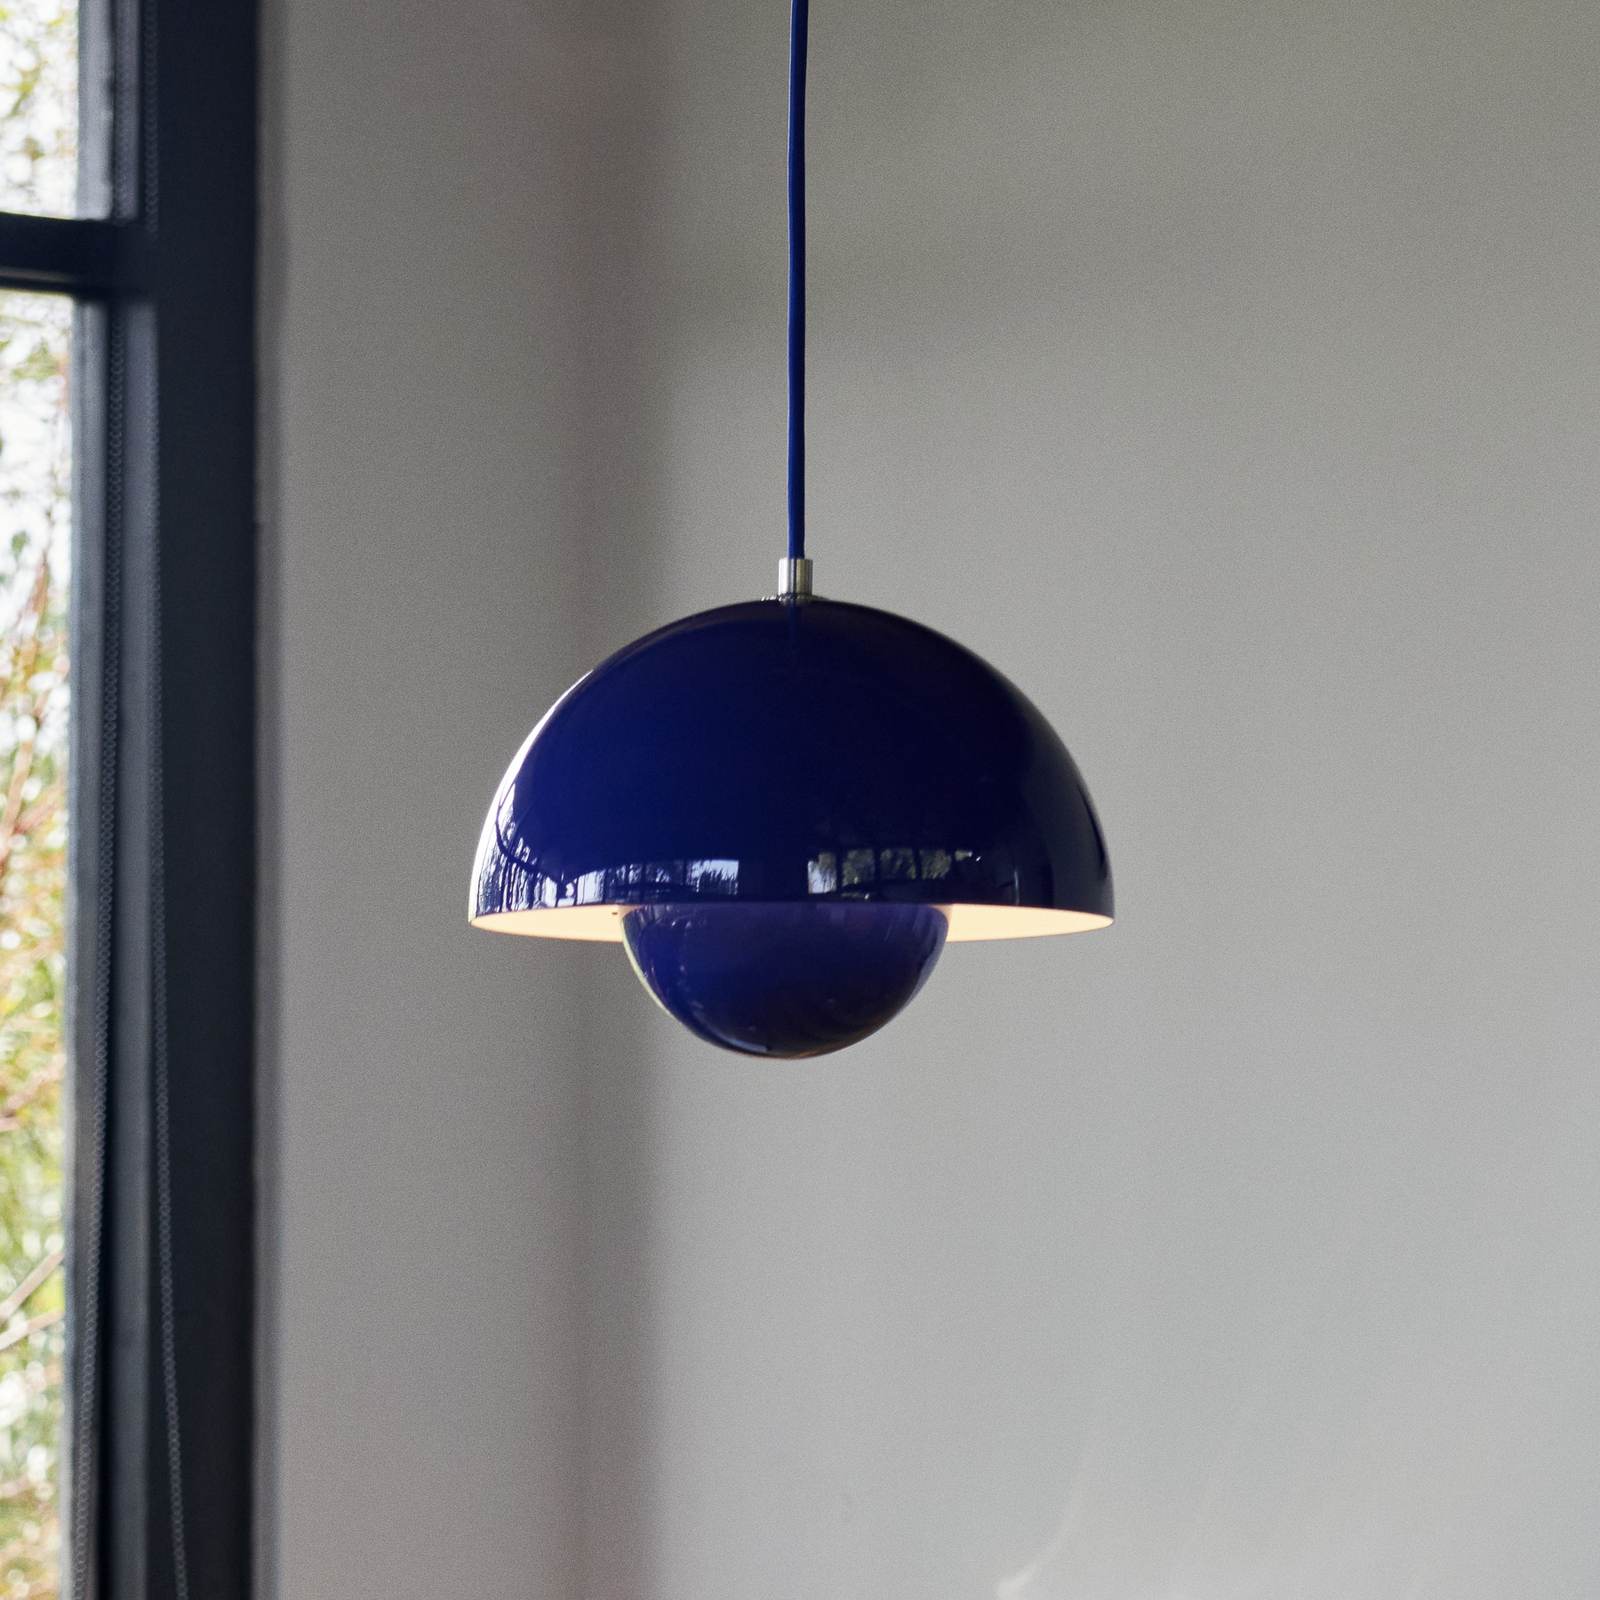 &Tradycyjna lampa wisząca Flowerpot VP1, Ø 23 cm, kobaltowy niebieski